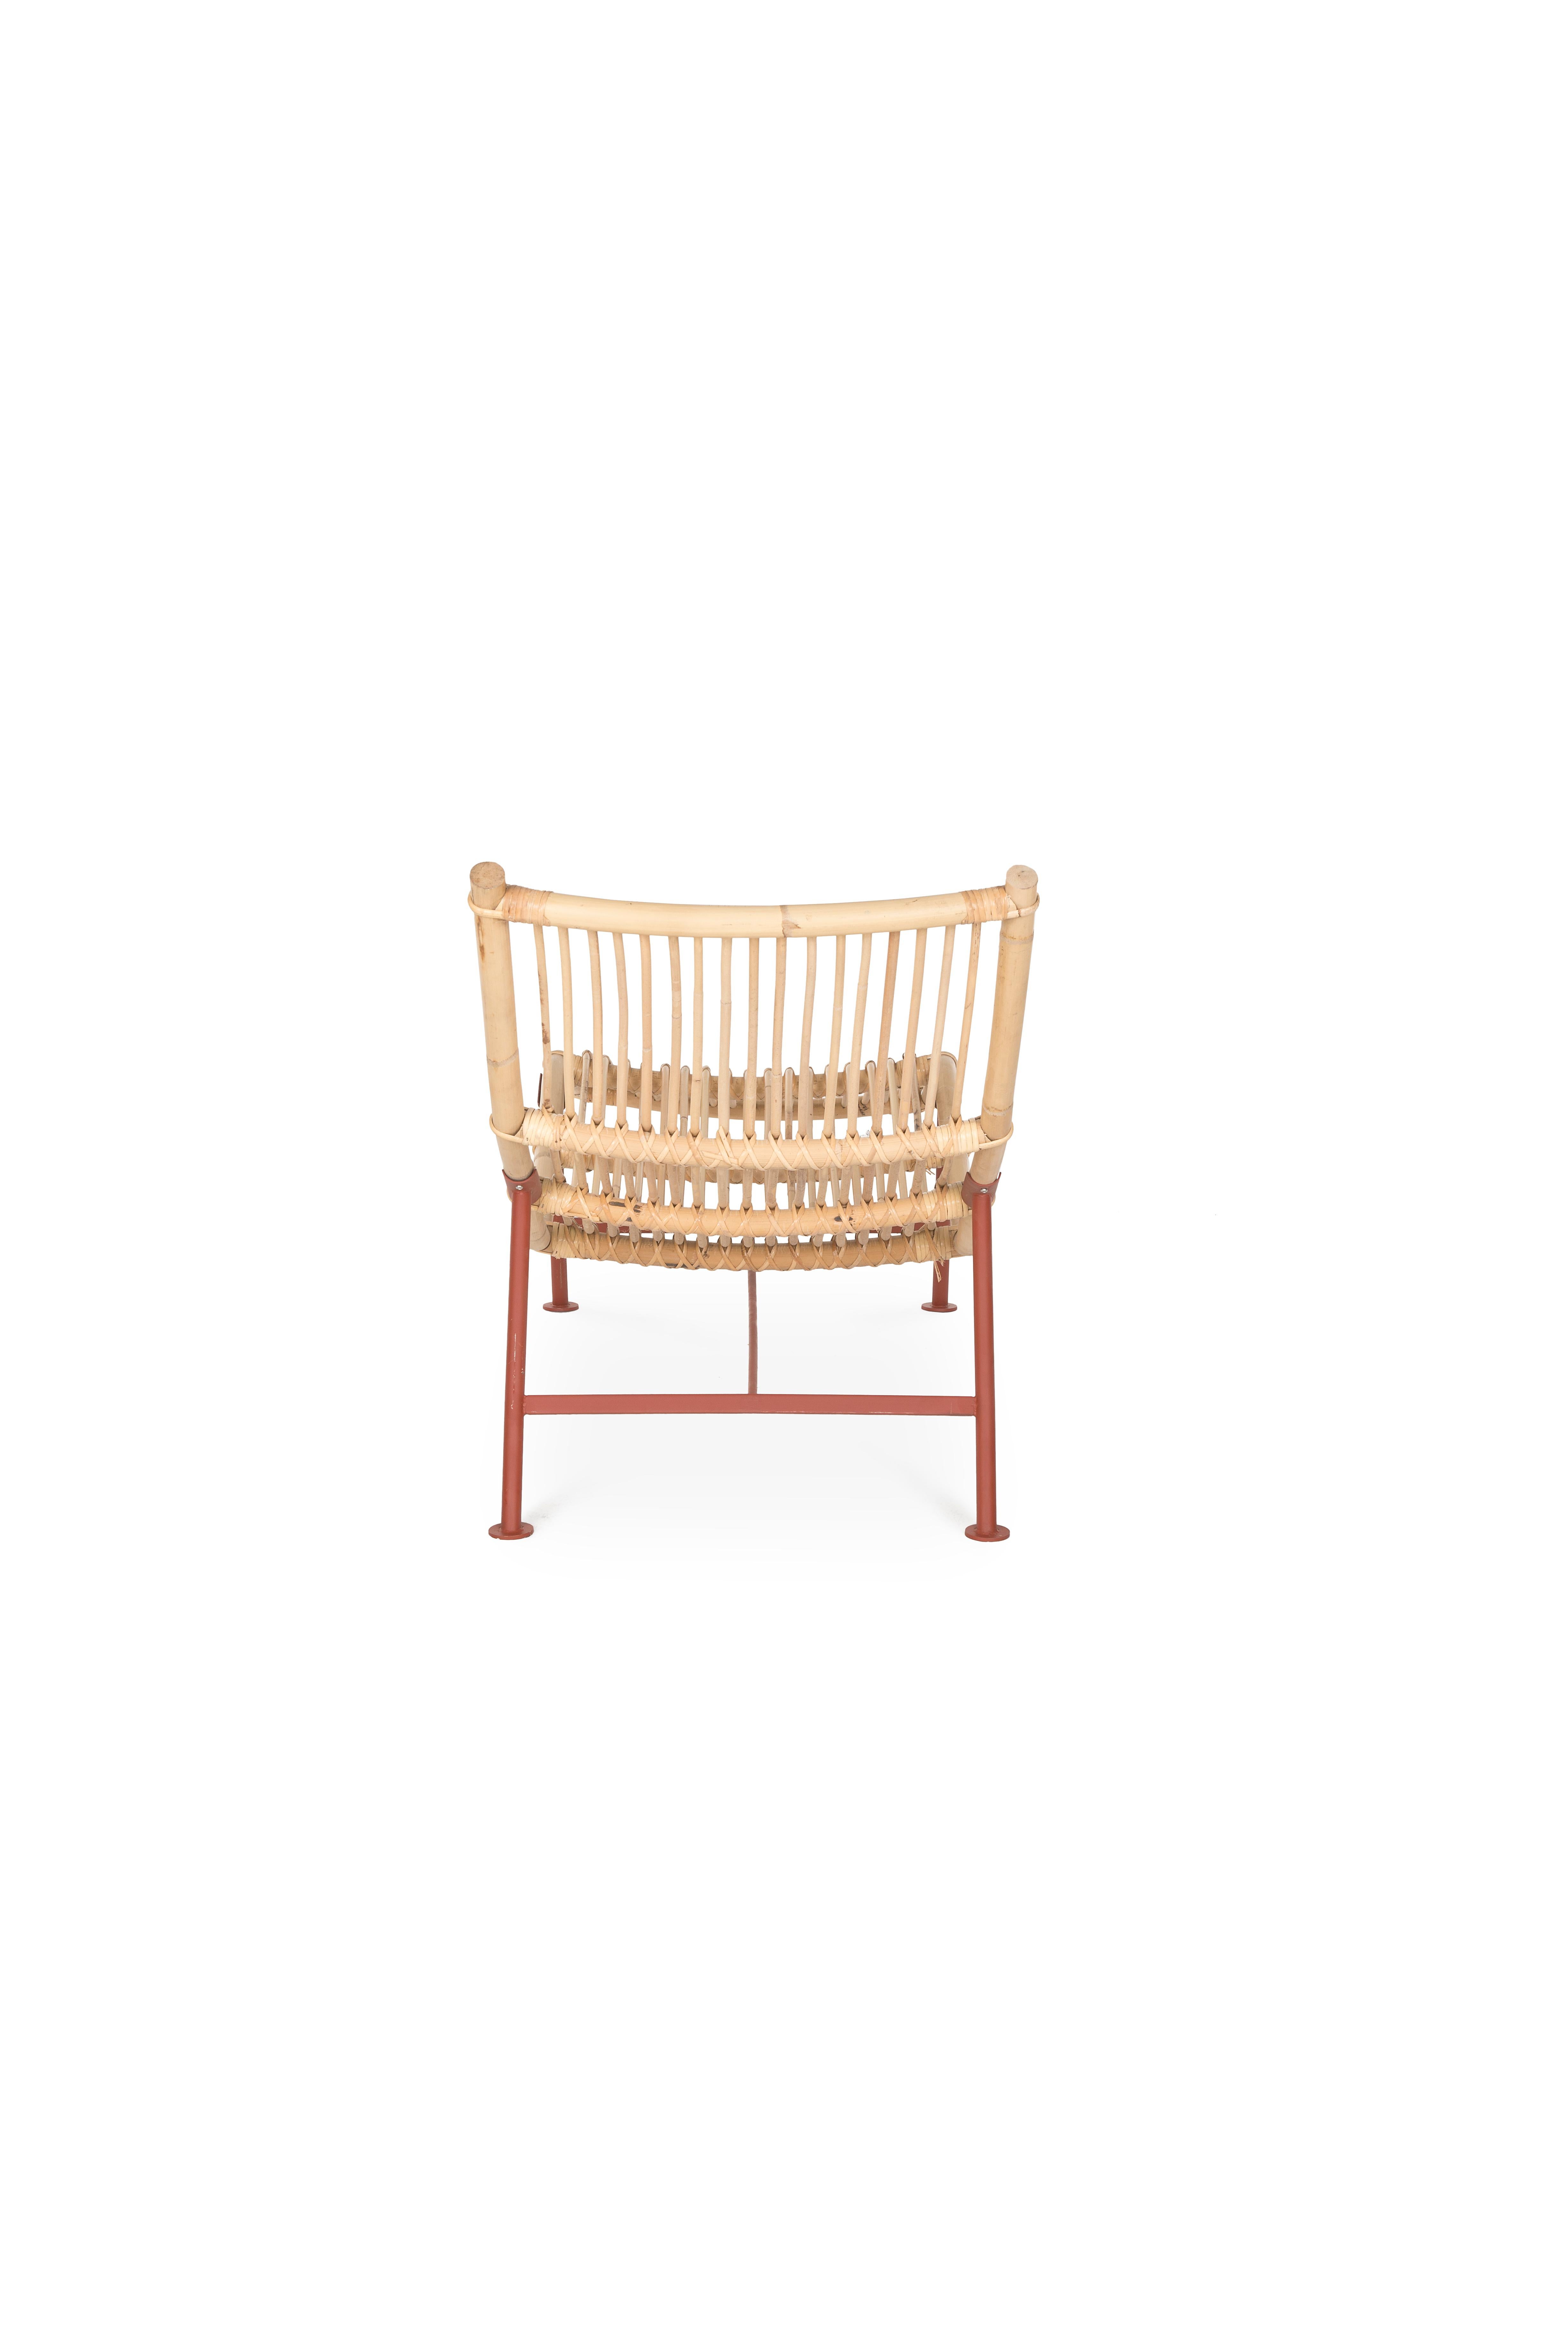 Dutch Lensvelt Cane Divan Lounge Chair For Sale